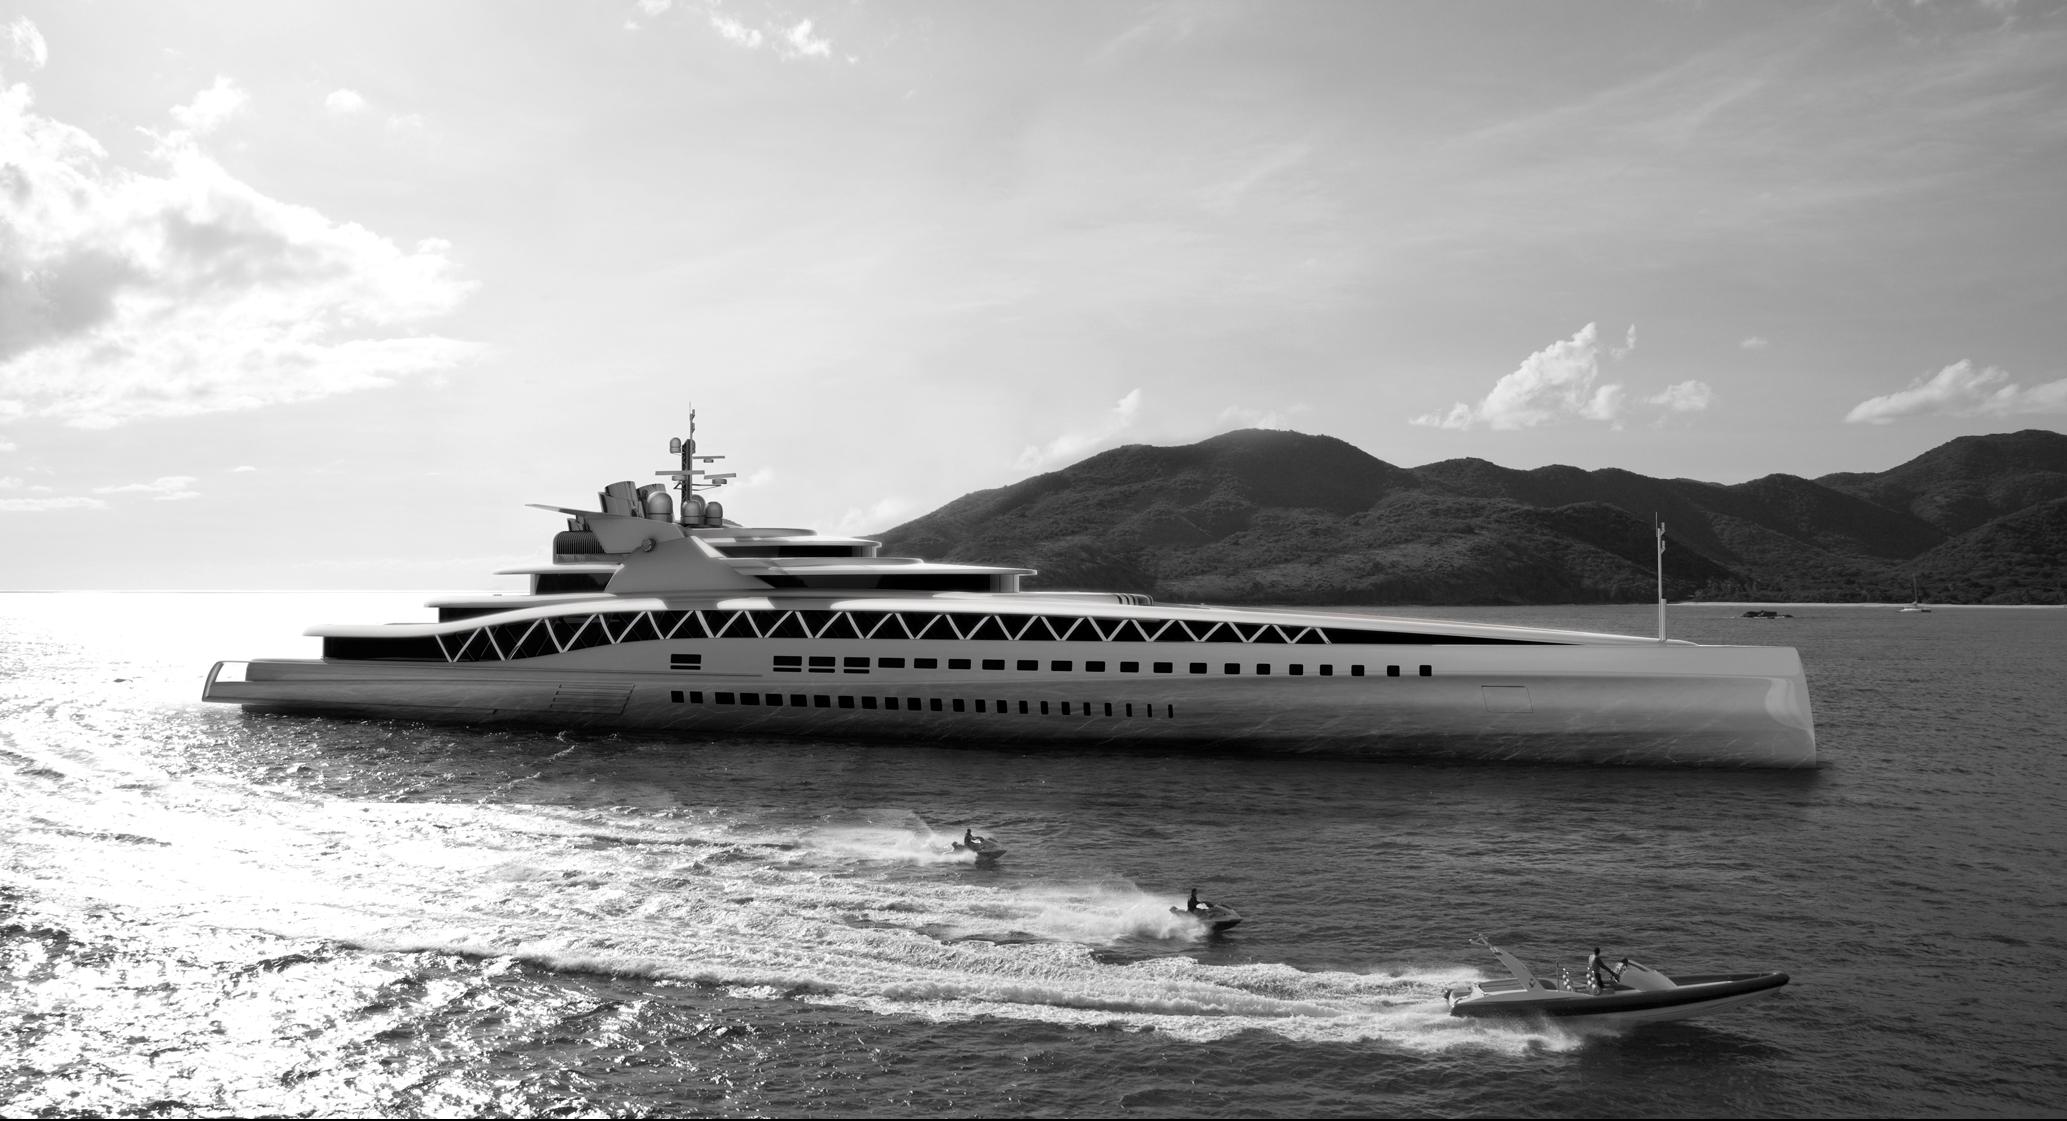 Fincantieri-145m-Fortissimo-superyacht-by-Ken-Freivokh-Design-1